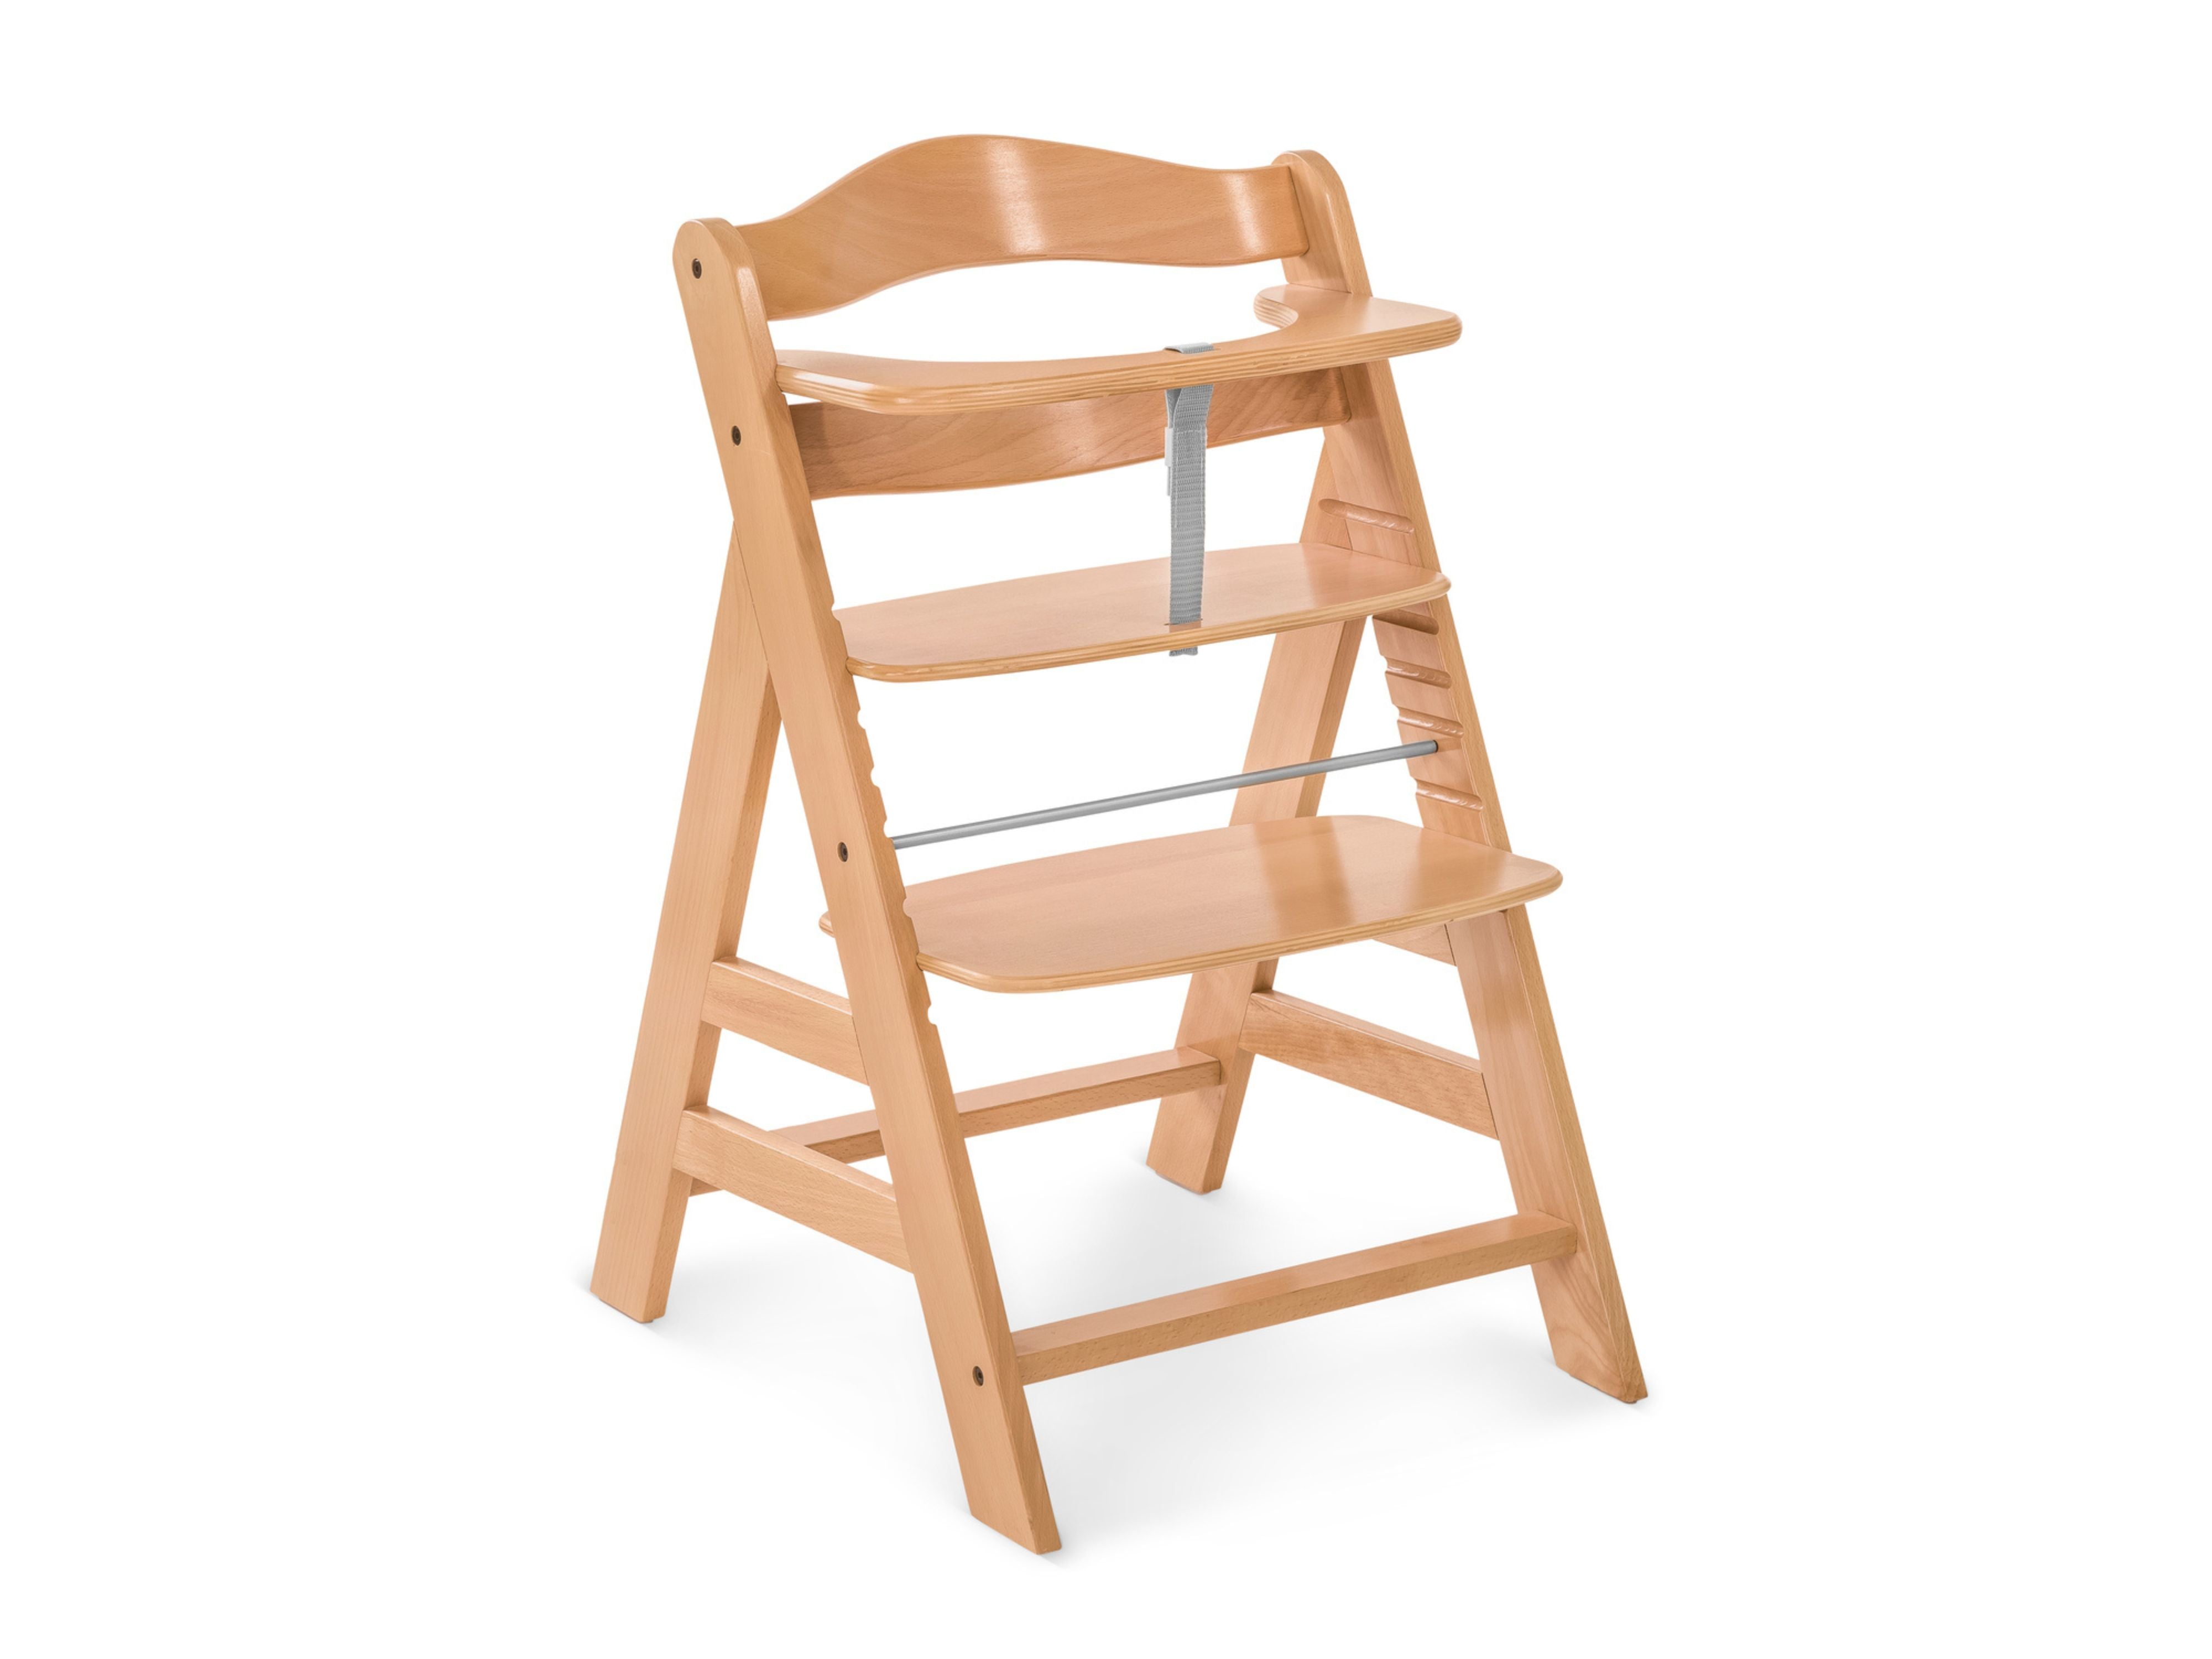 Hauck Alpha+ Wooden High Chair